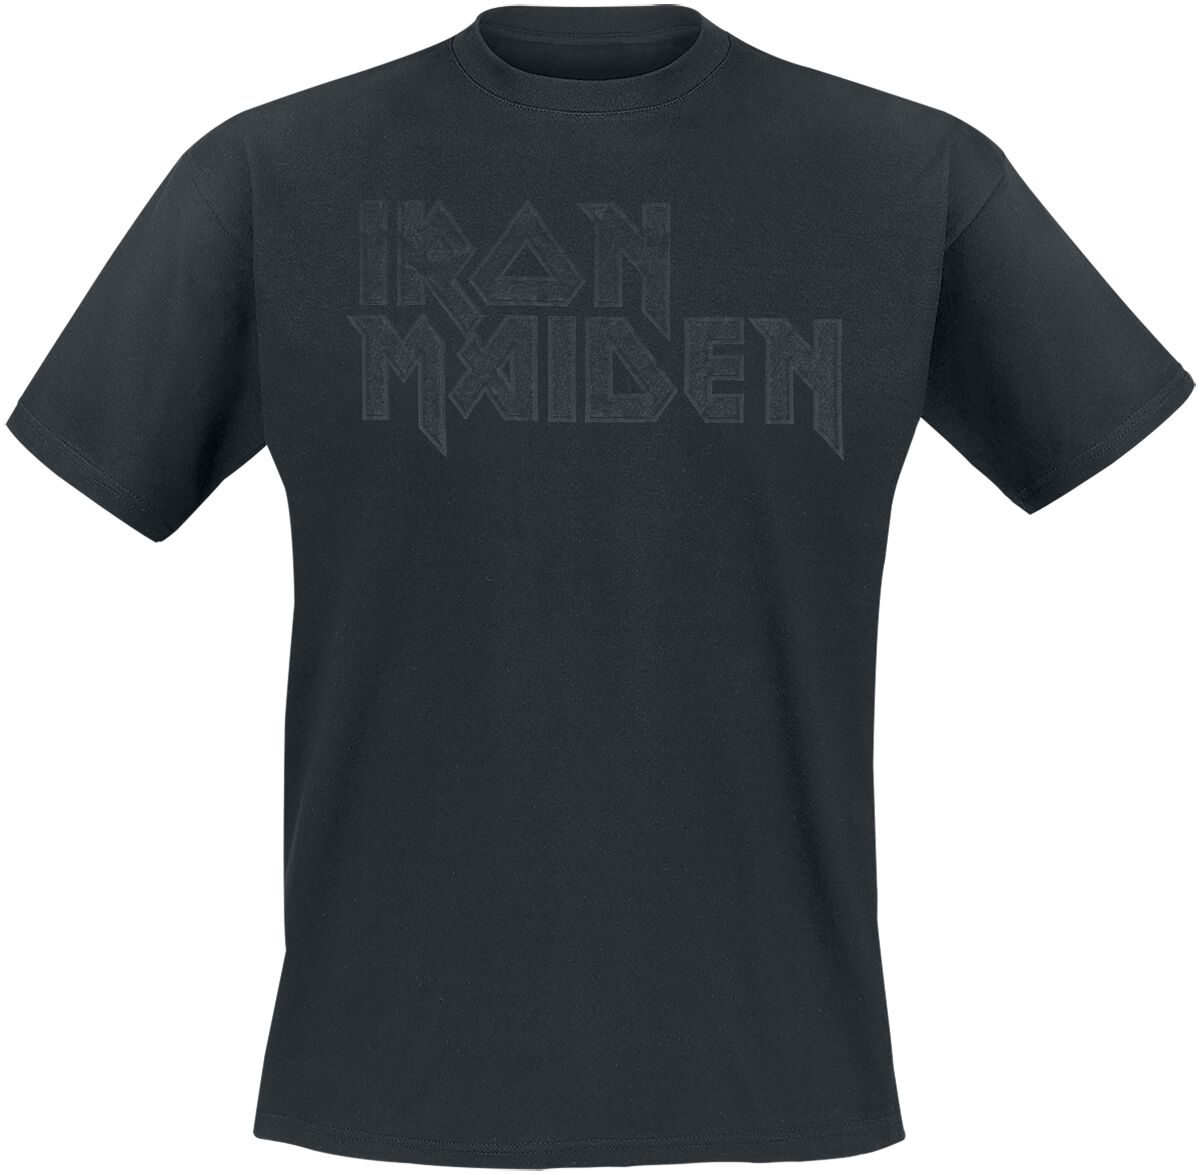 Iron Maiden T-Shirt - Black On Black Logo Stacked - S bis 4XL - für Männer - Größe M - schwarz  - Lizenziertes Merchandise!